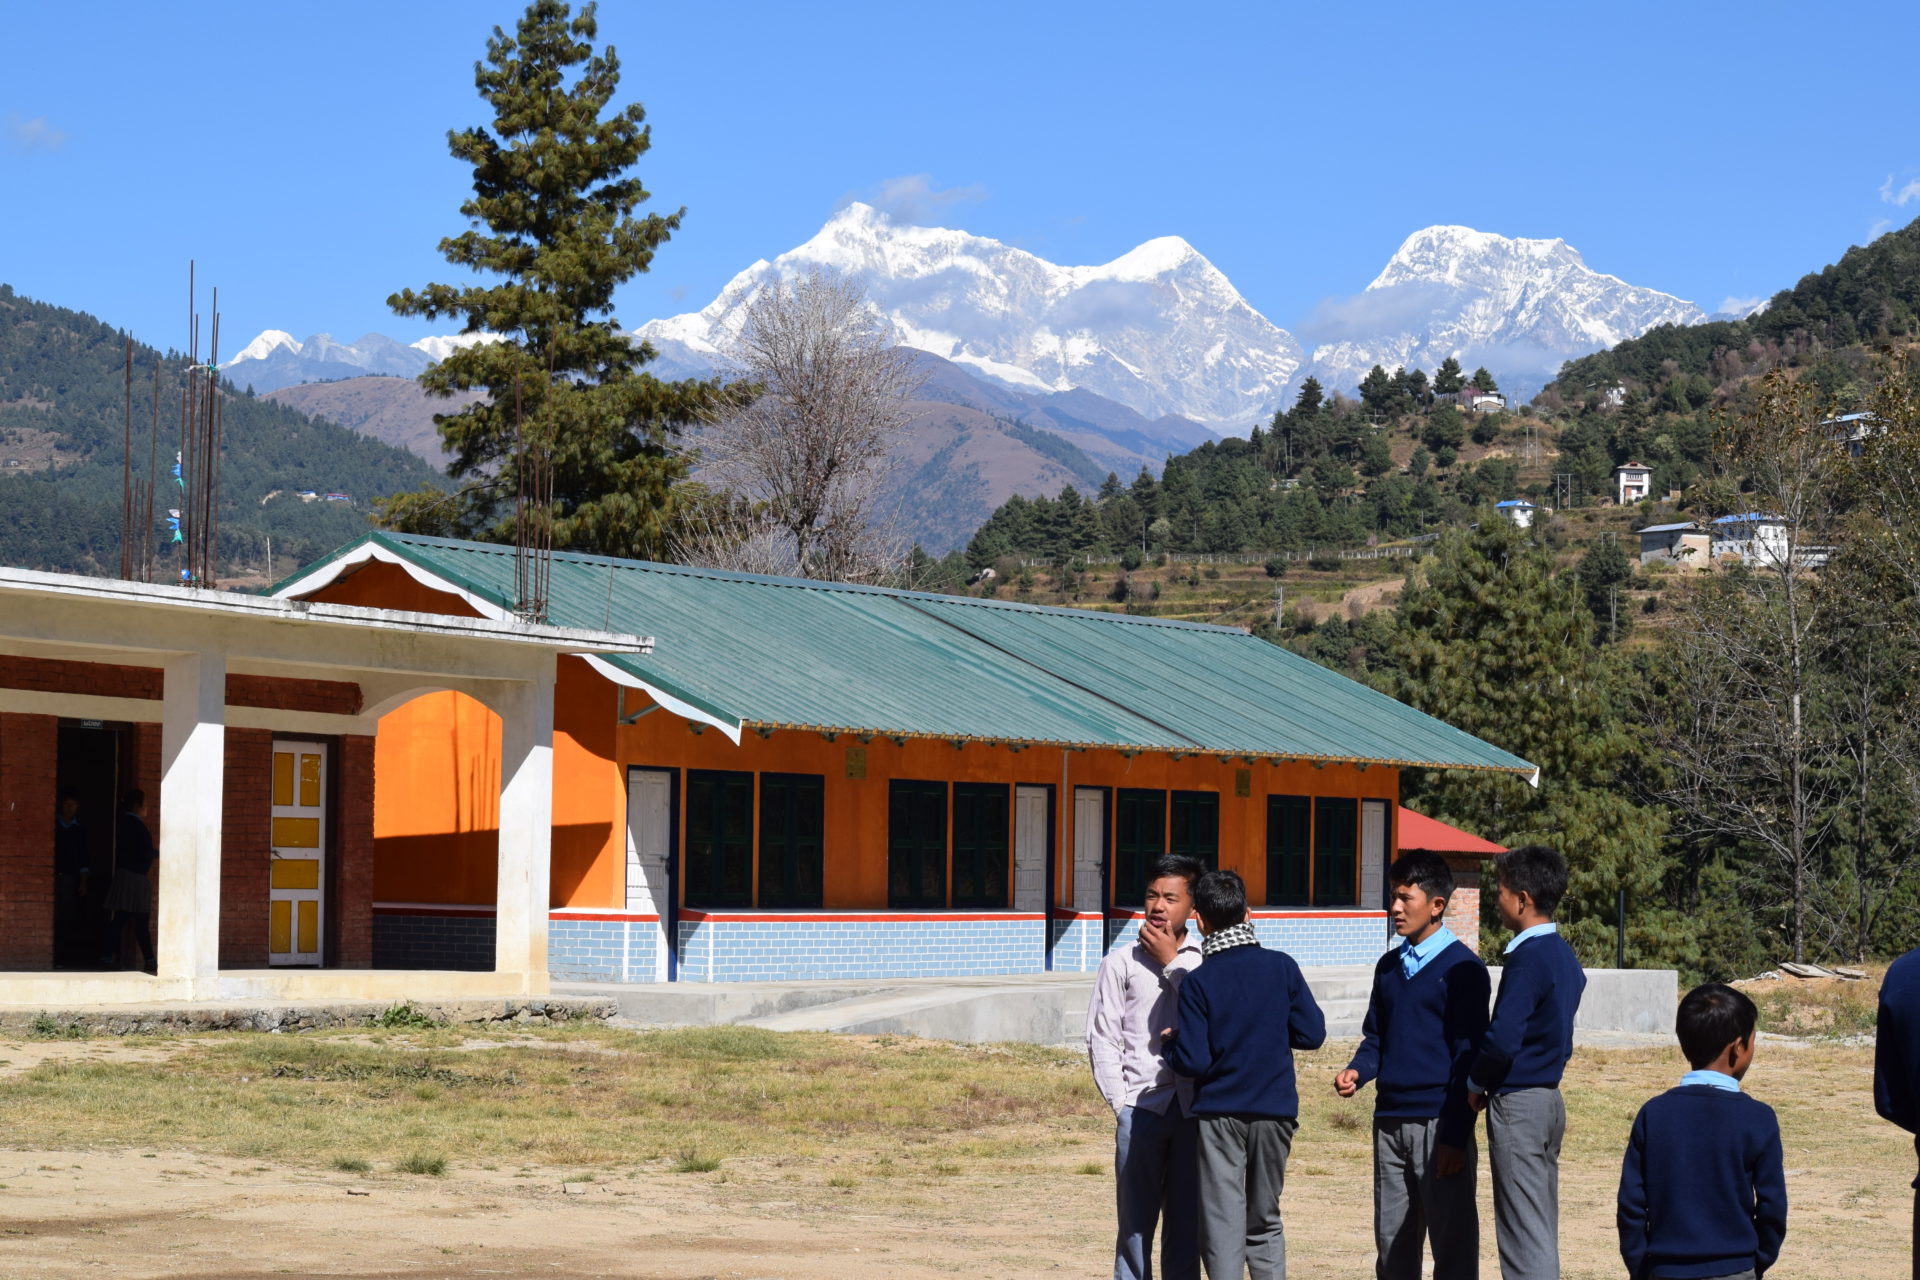 Nepal Rebuild Program – Winner of 3 Good Design Awards